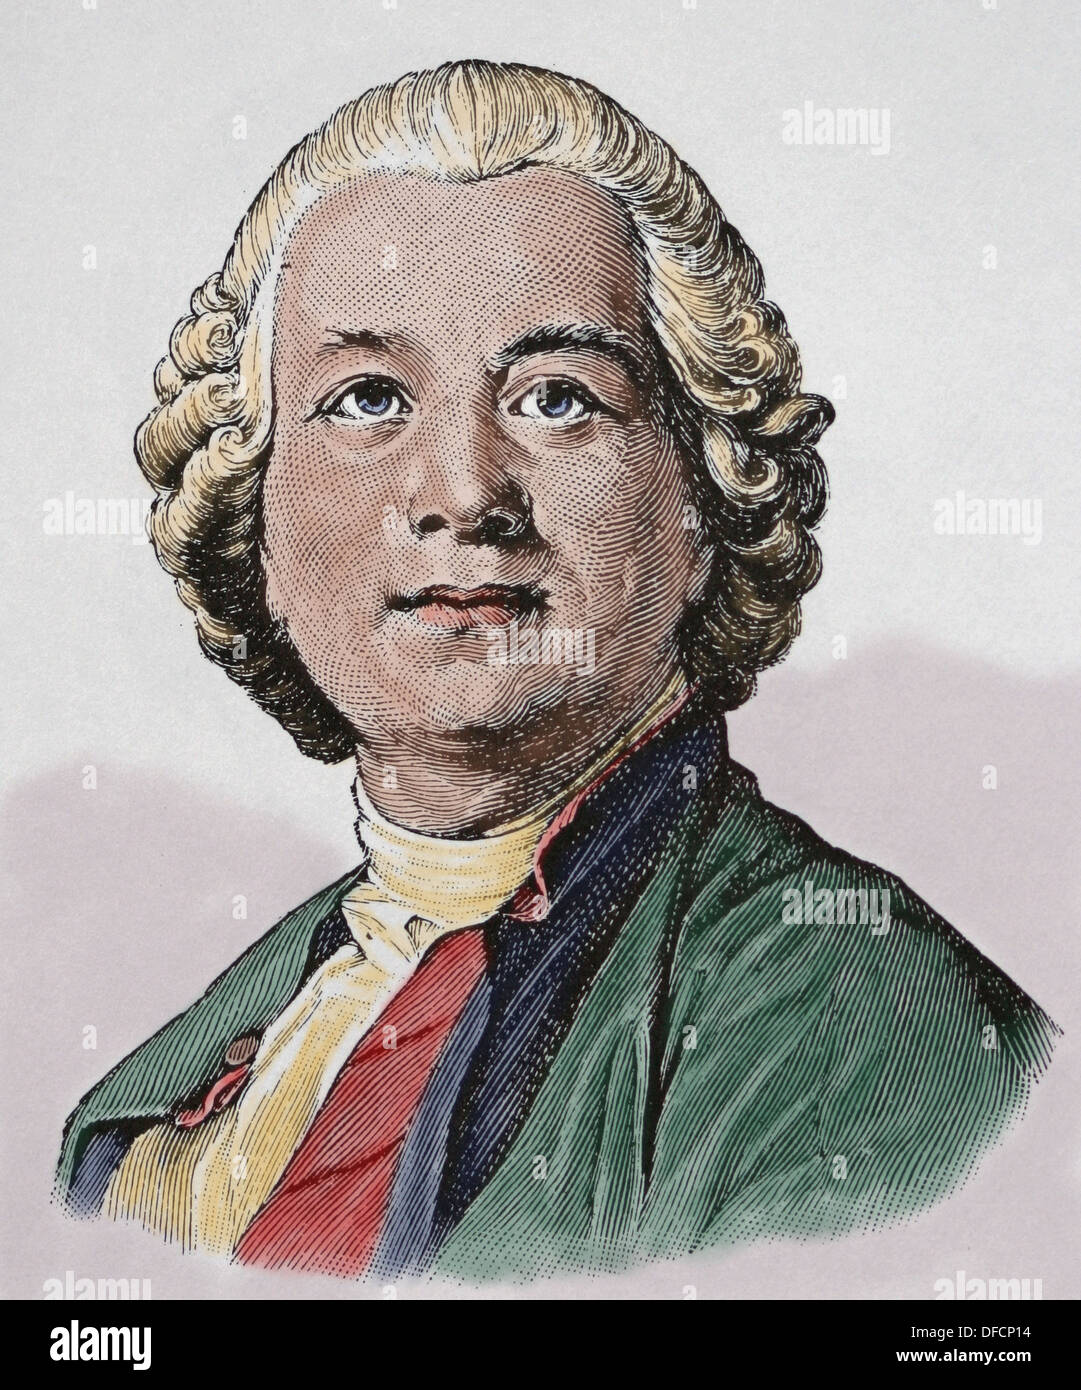 Christoph Willibald Ritter von Gluck (1714 – 1787). Komponist der frühen klassischen Periode. Farbige Gravur. Stockfoto